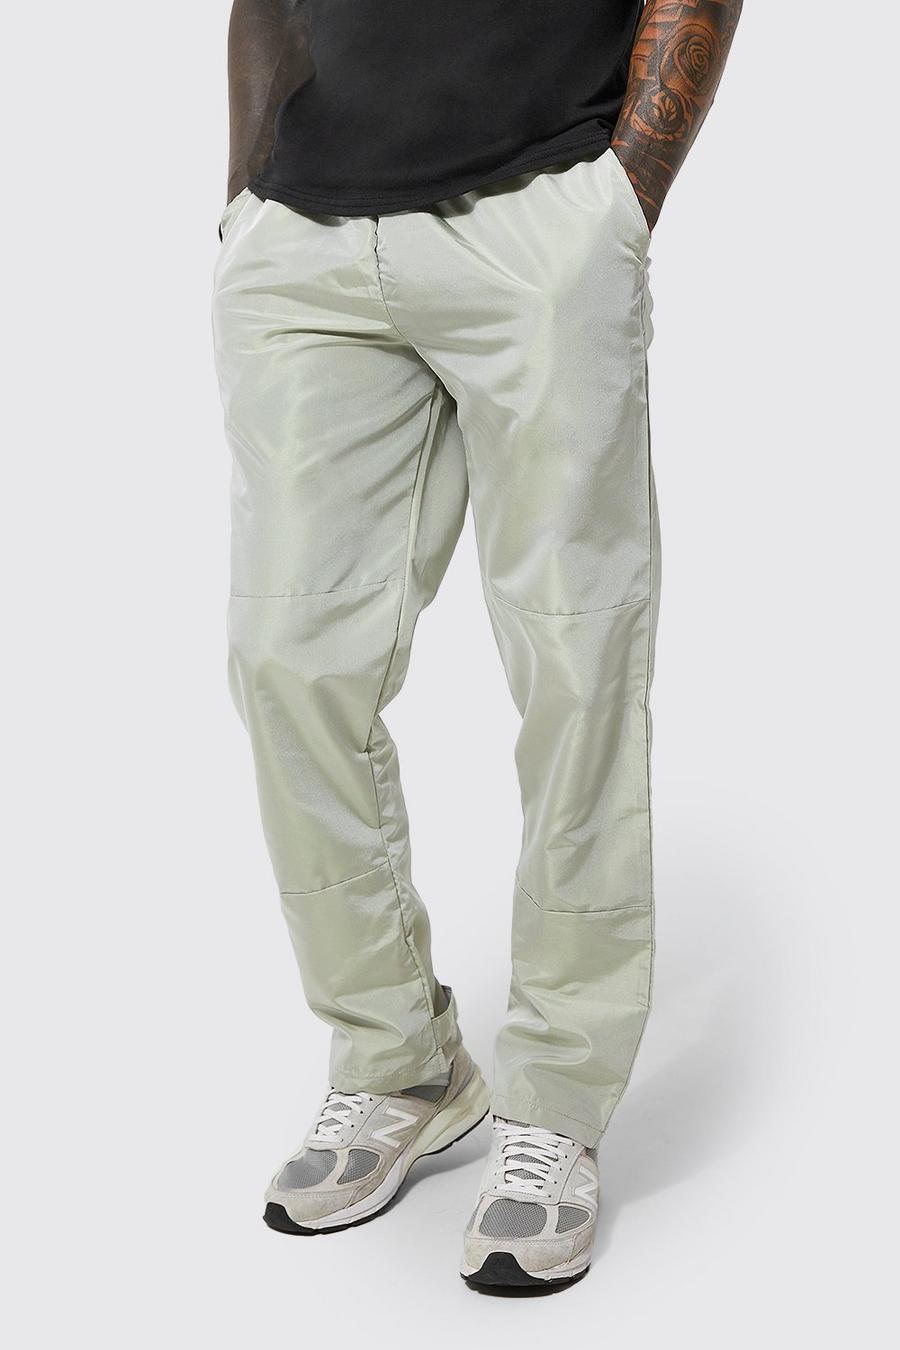 אפור gris מכנסי דגמ'ח מחליפי צבעים בגזרה משוחררת עם שרוכי כיווץ ארוכים